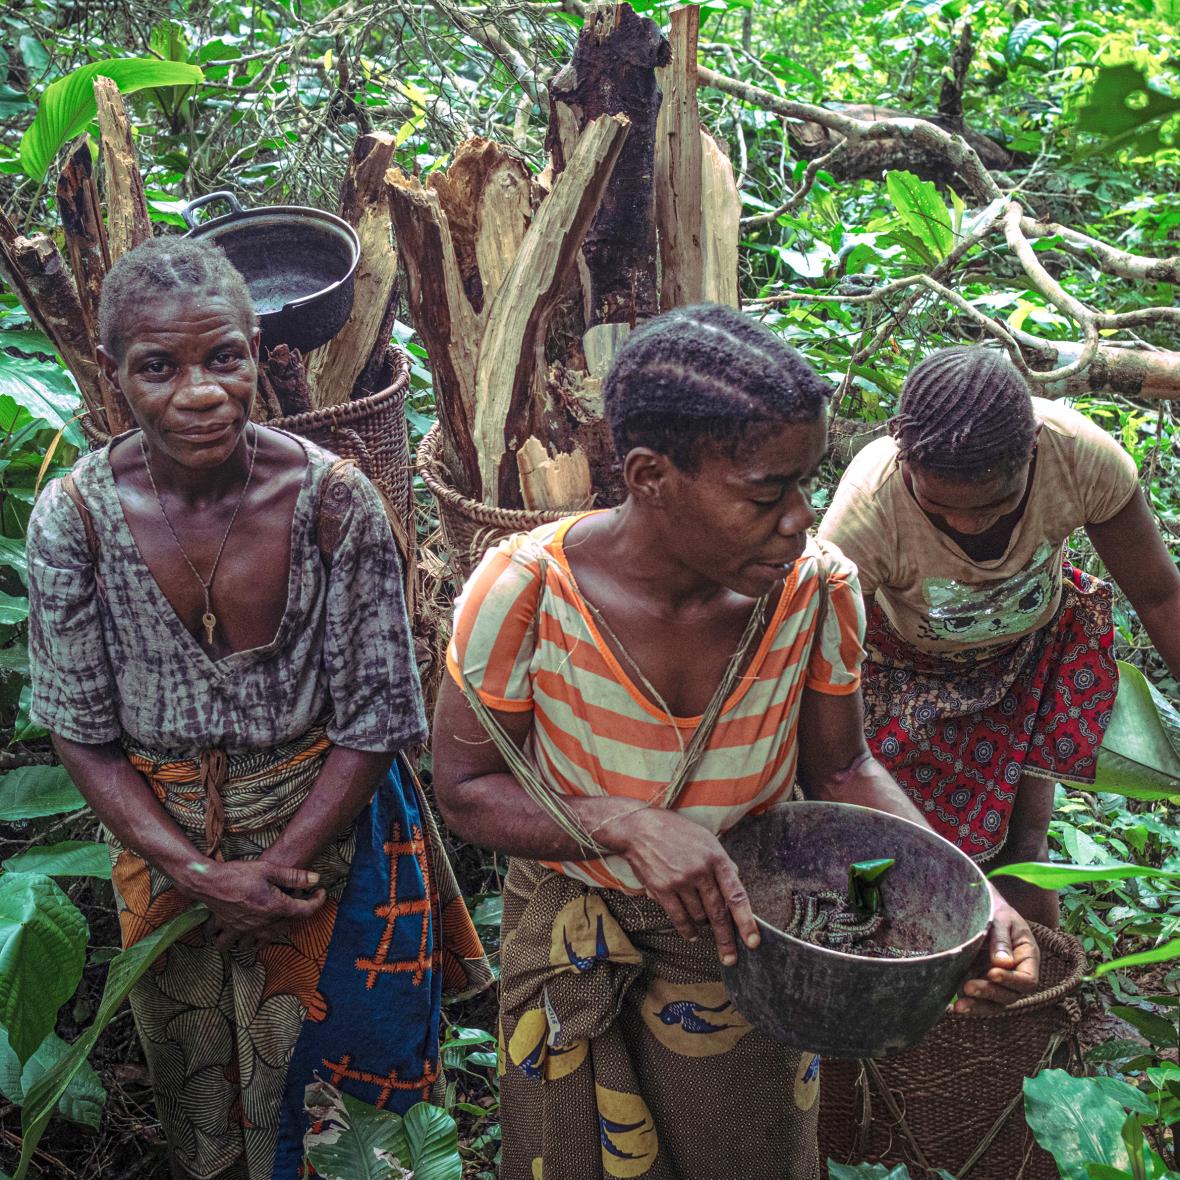 Ομάδα γυναικών μαζεύει βρώσιμες κάμπιες σε δάσος της Δημοκρατίας του Κονγκό. Διαχειρίζονται και προστατεύουν το δάσος, από το οποίο εξαρτώνται εδώ και πολλά χρόνια, ωστόσο η δημιουργία προστατευομένων περιοχών έχει επιφέρει πείνα, κακή υγεία και καταστροφική βία -παρενόχληση, ξυλοδαρμούς, βασανιστήρια, ακόμη και θάνατο- στους αυτόχθονες πληθυσμούς